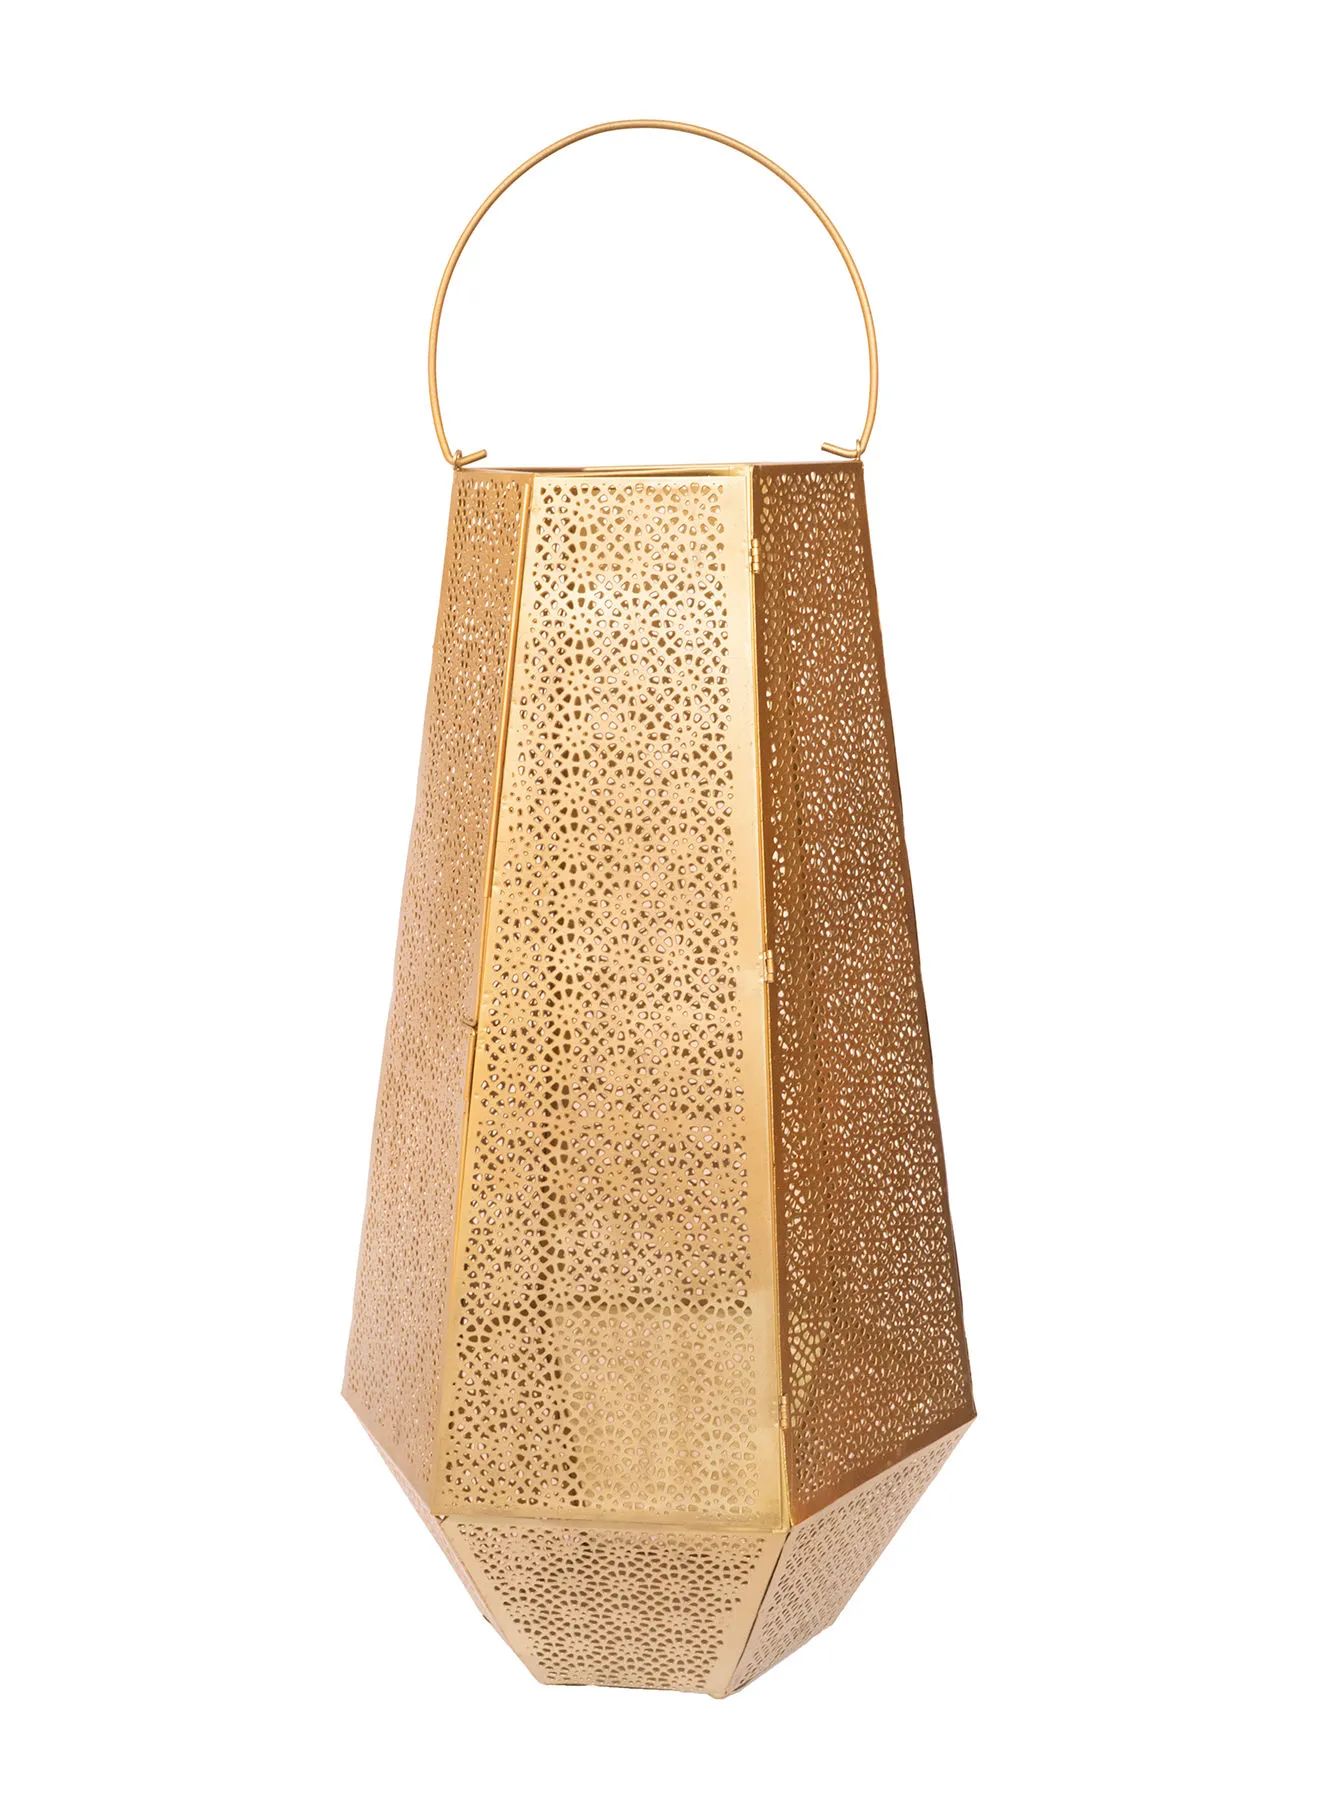 حامل شموع رمضان مصنوع يدويًا من ebb & flow ذو روائح فريدة وفاخرة وفاخرة لمنزل أنيق ومثالي ذهبي 30.48 x 30.48 x 54cm